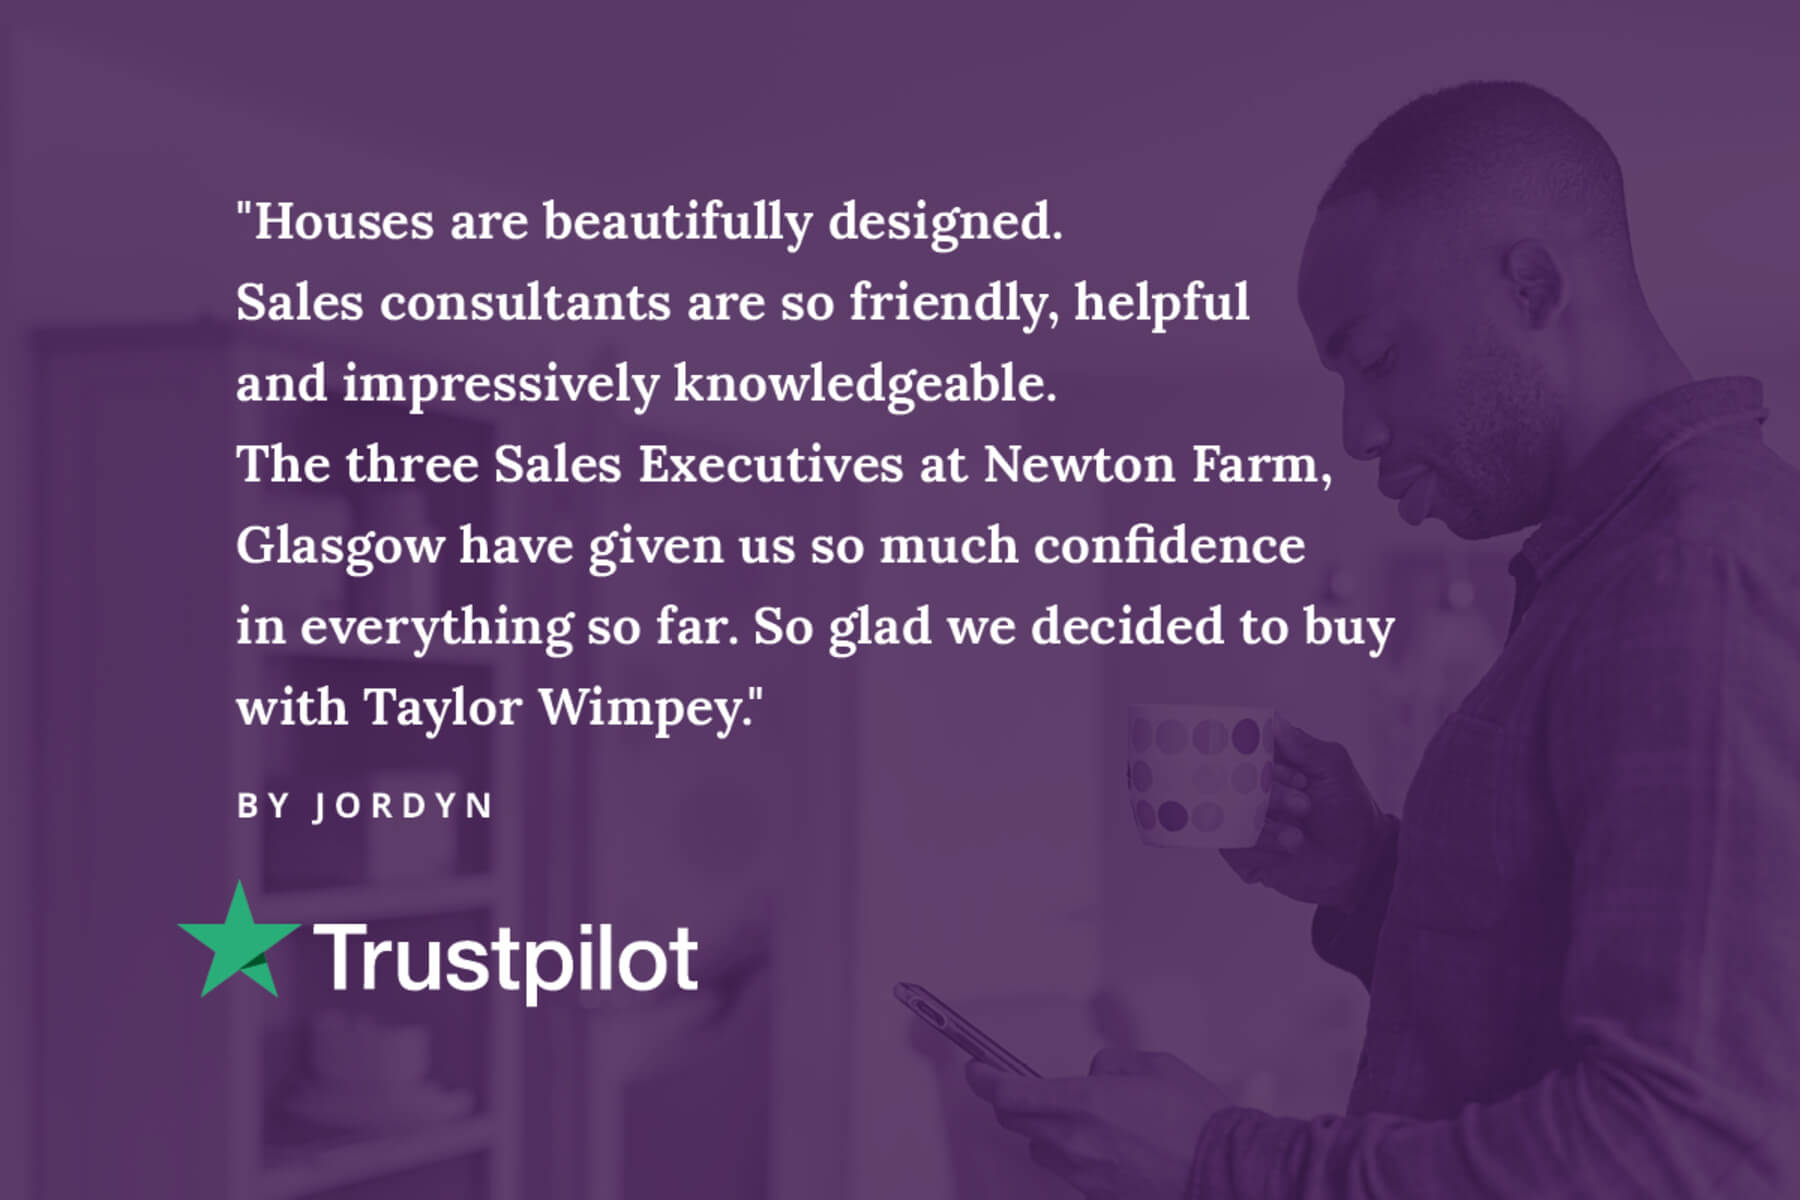 Trust pilot review newton Farm